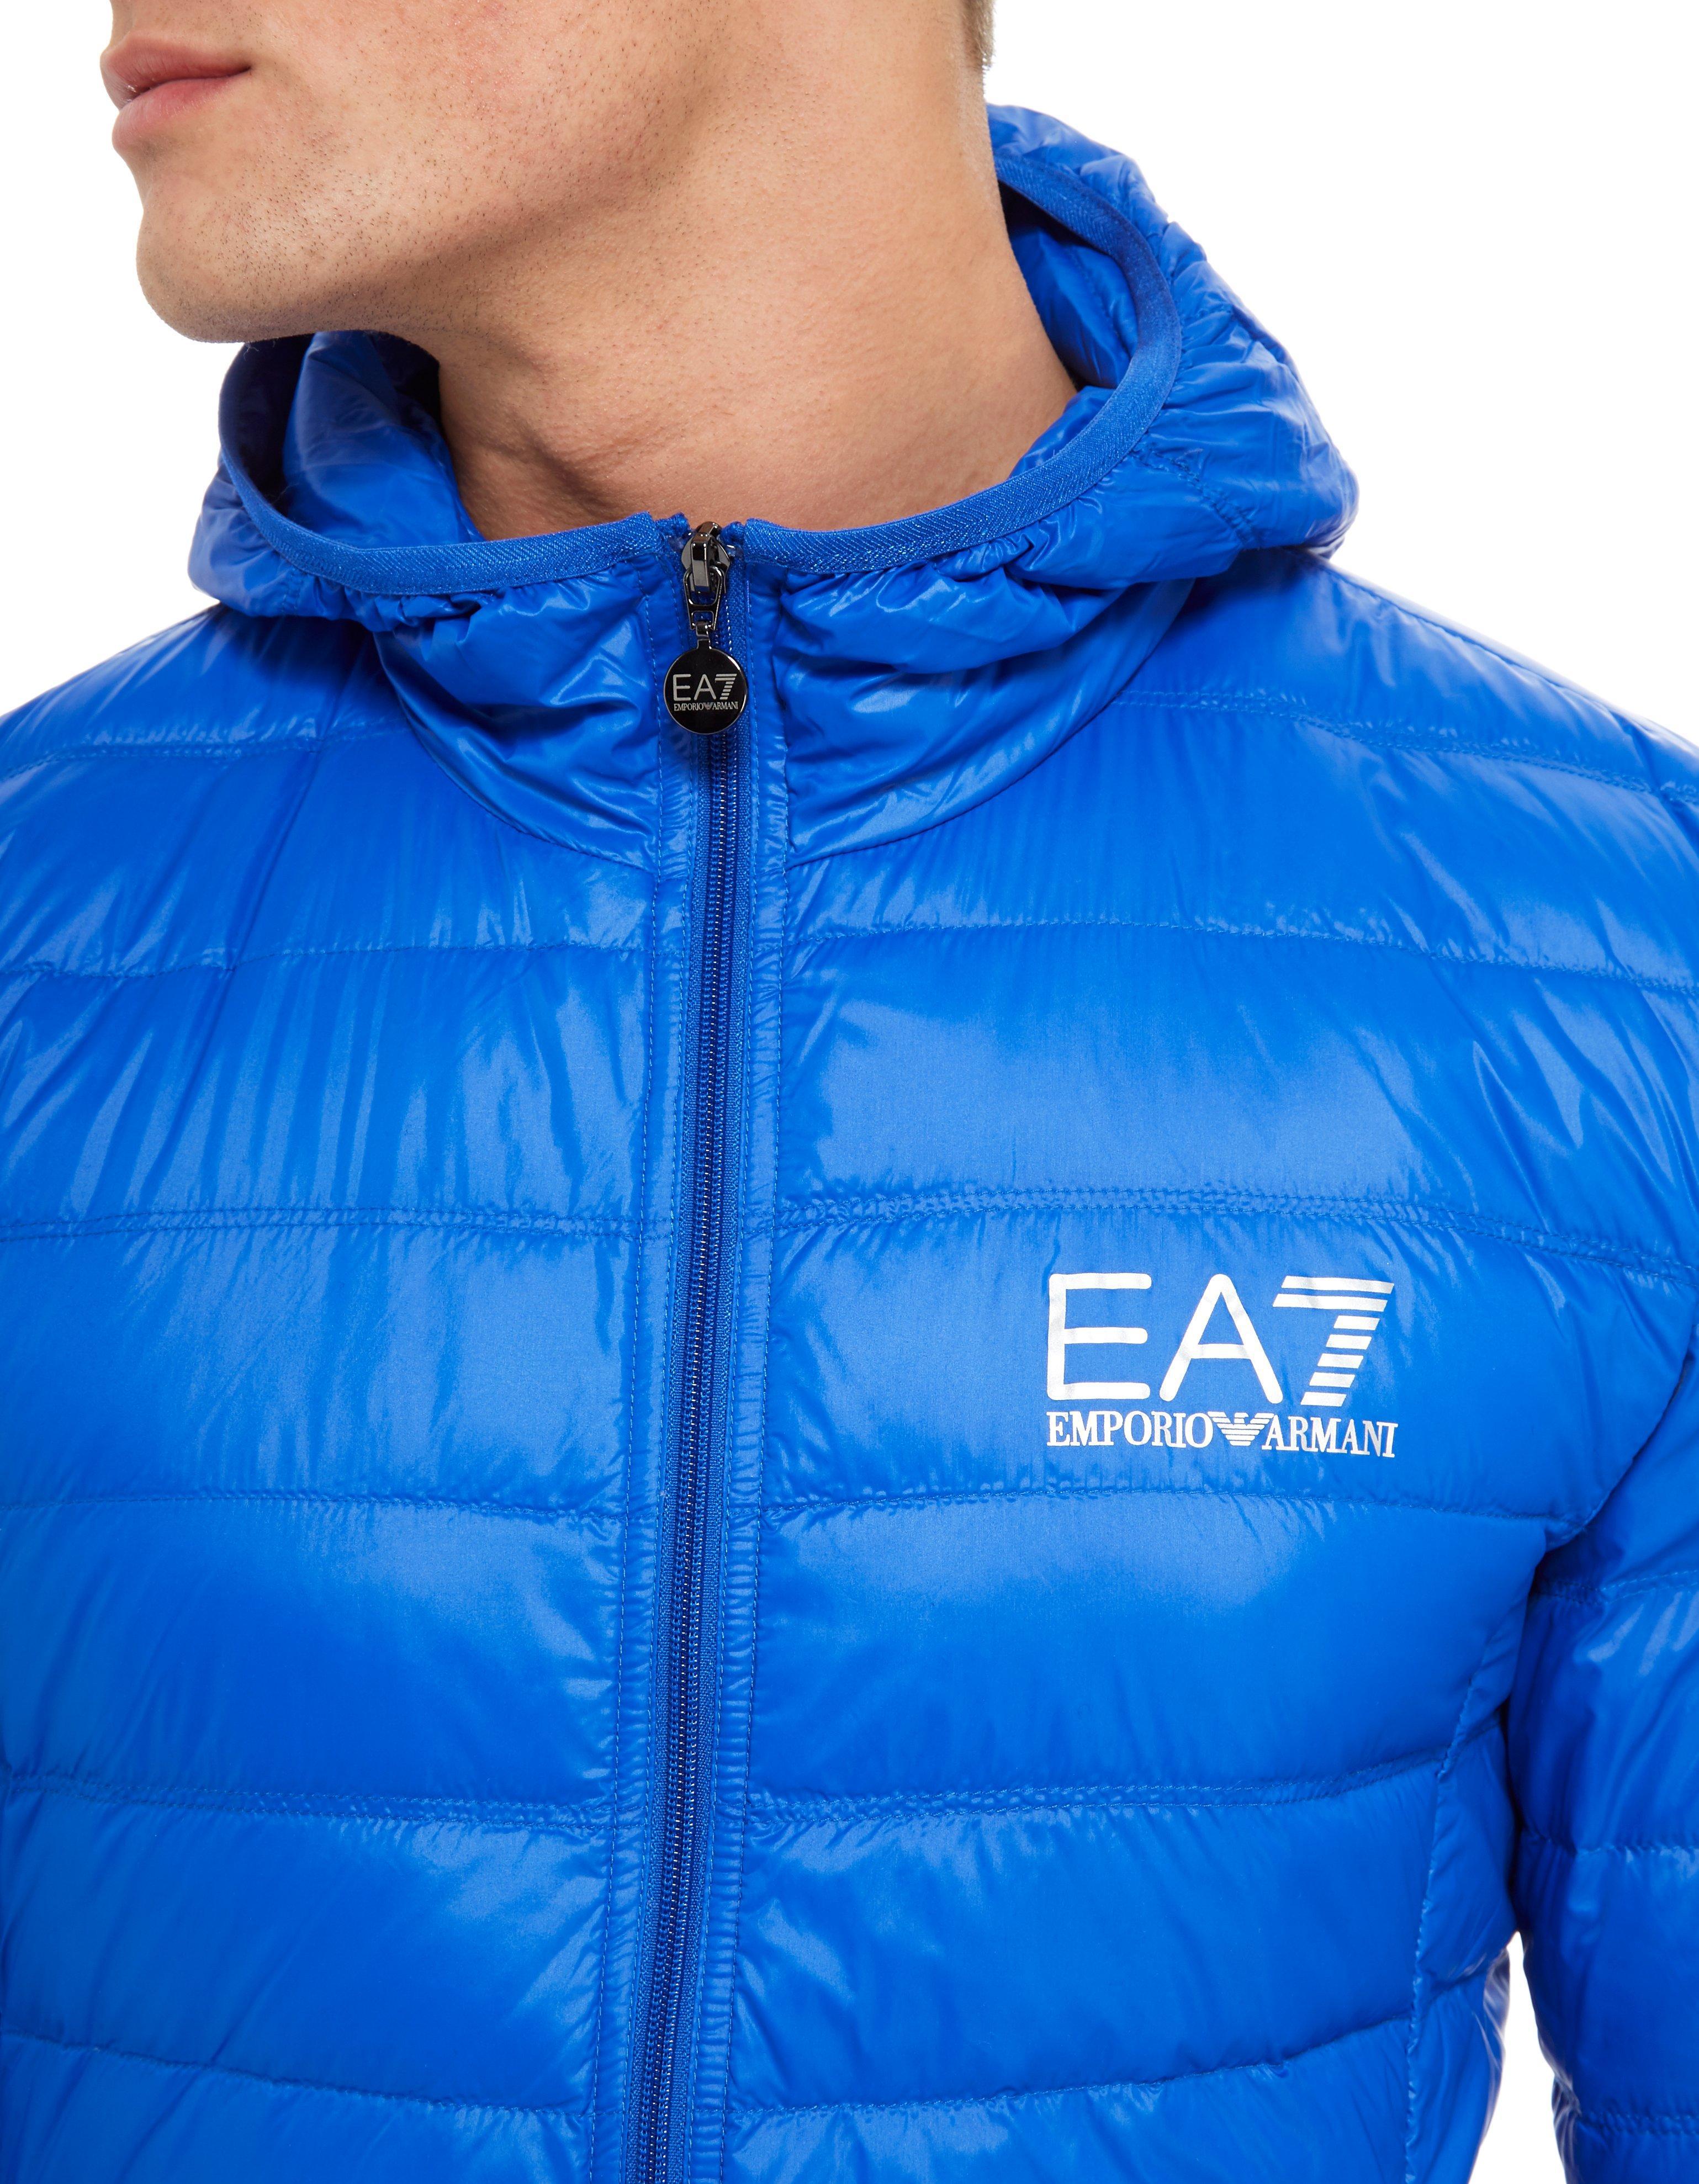 EA7 Synthetic Core Bubble Jacket in Blue for Men - Lyst